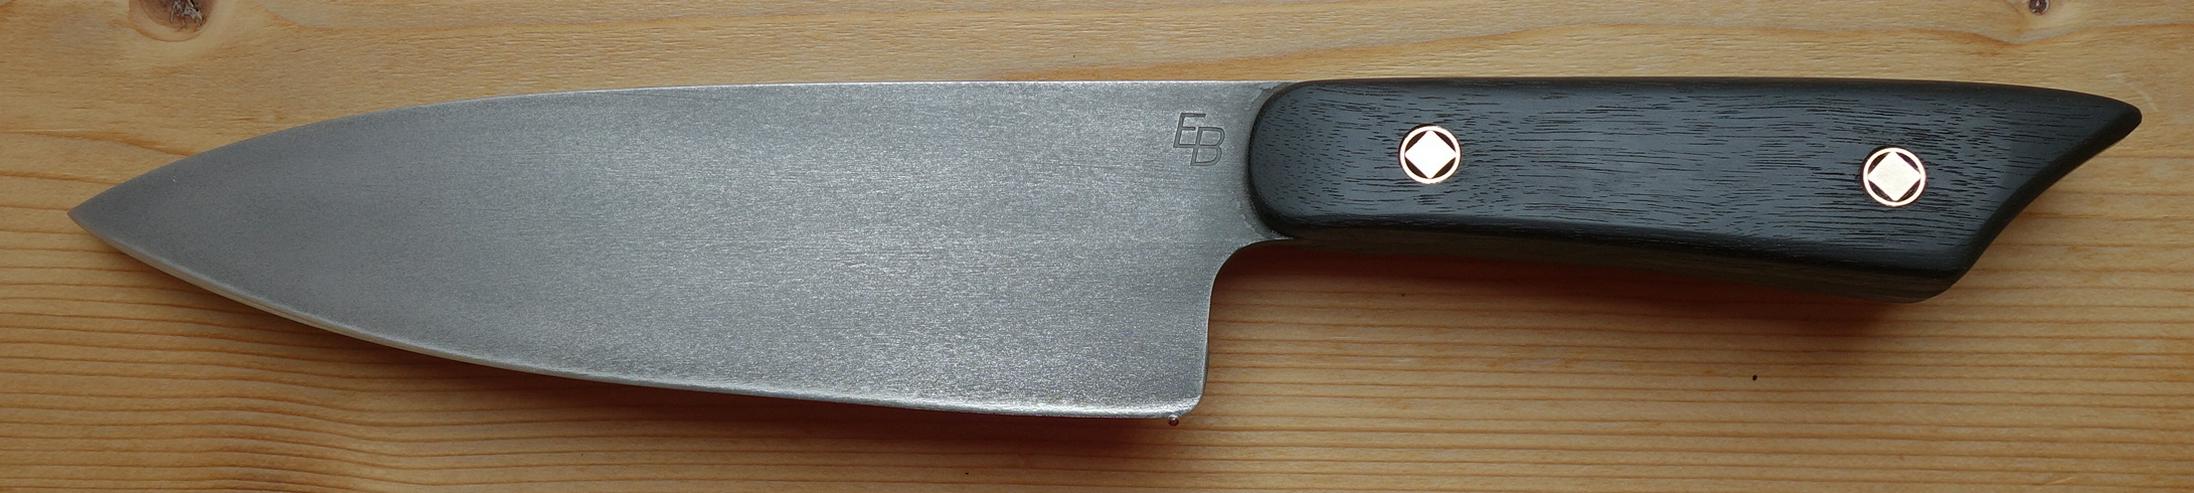 Bild 4: Handgefertigte Outdoormesser bei Messer Böhner